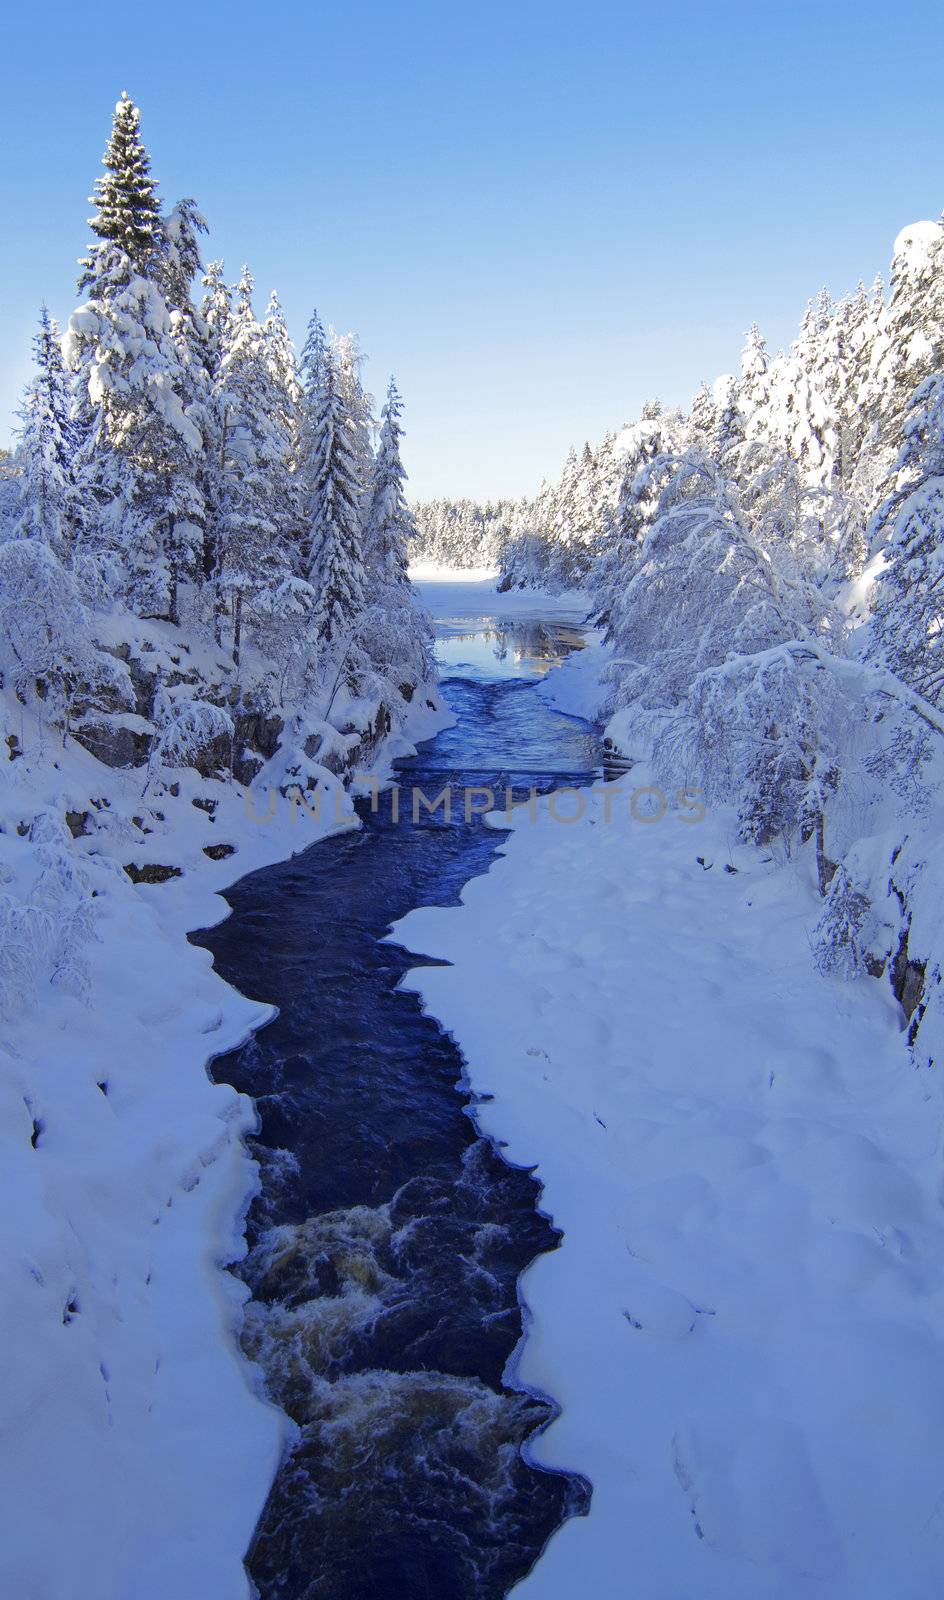 Winter wonderland by kjorgen